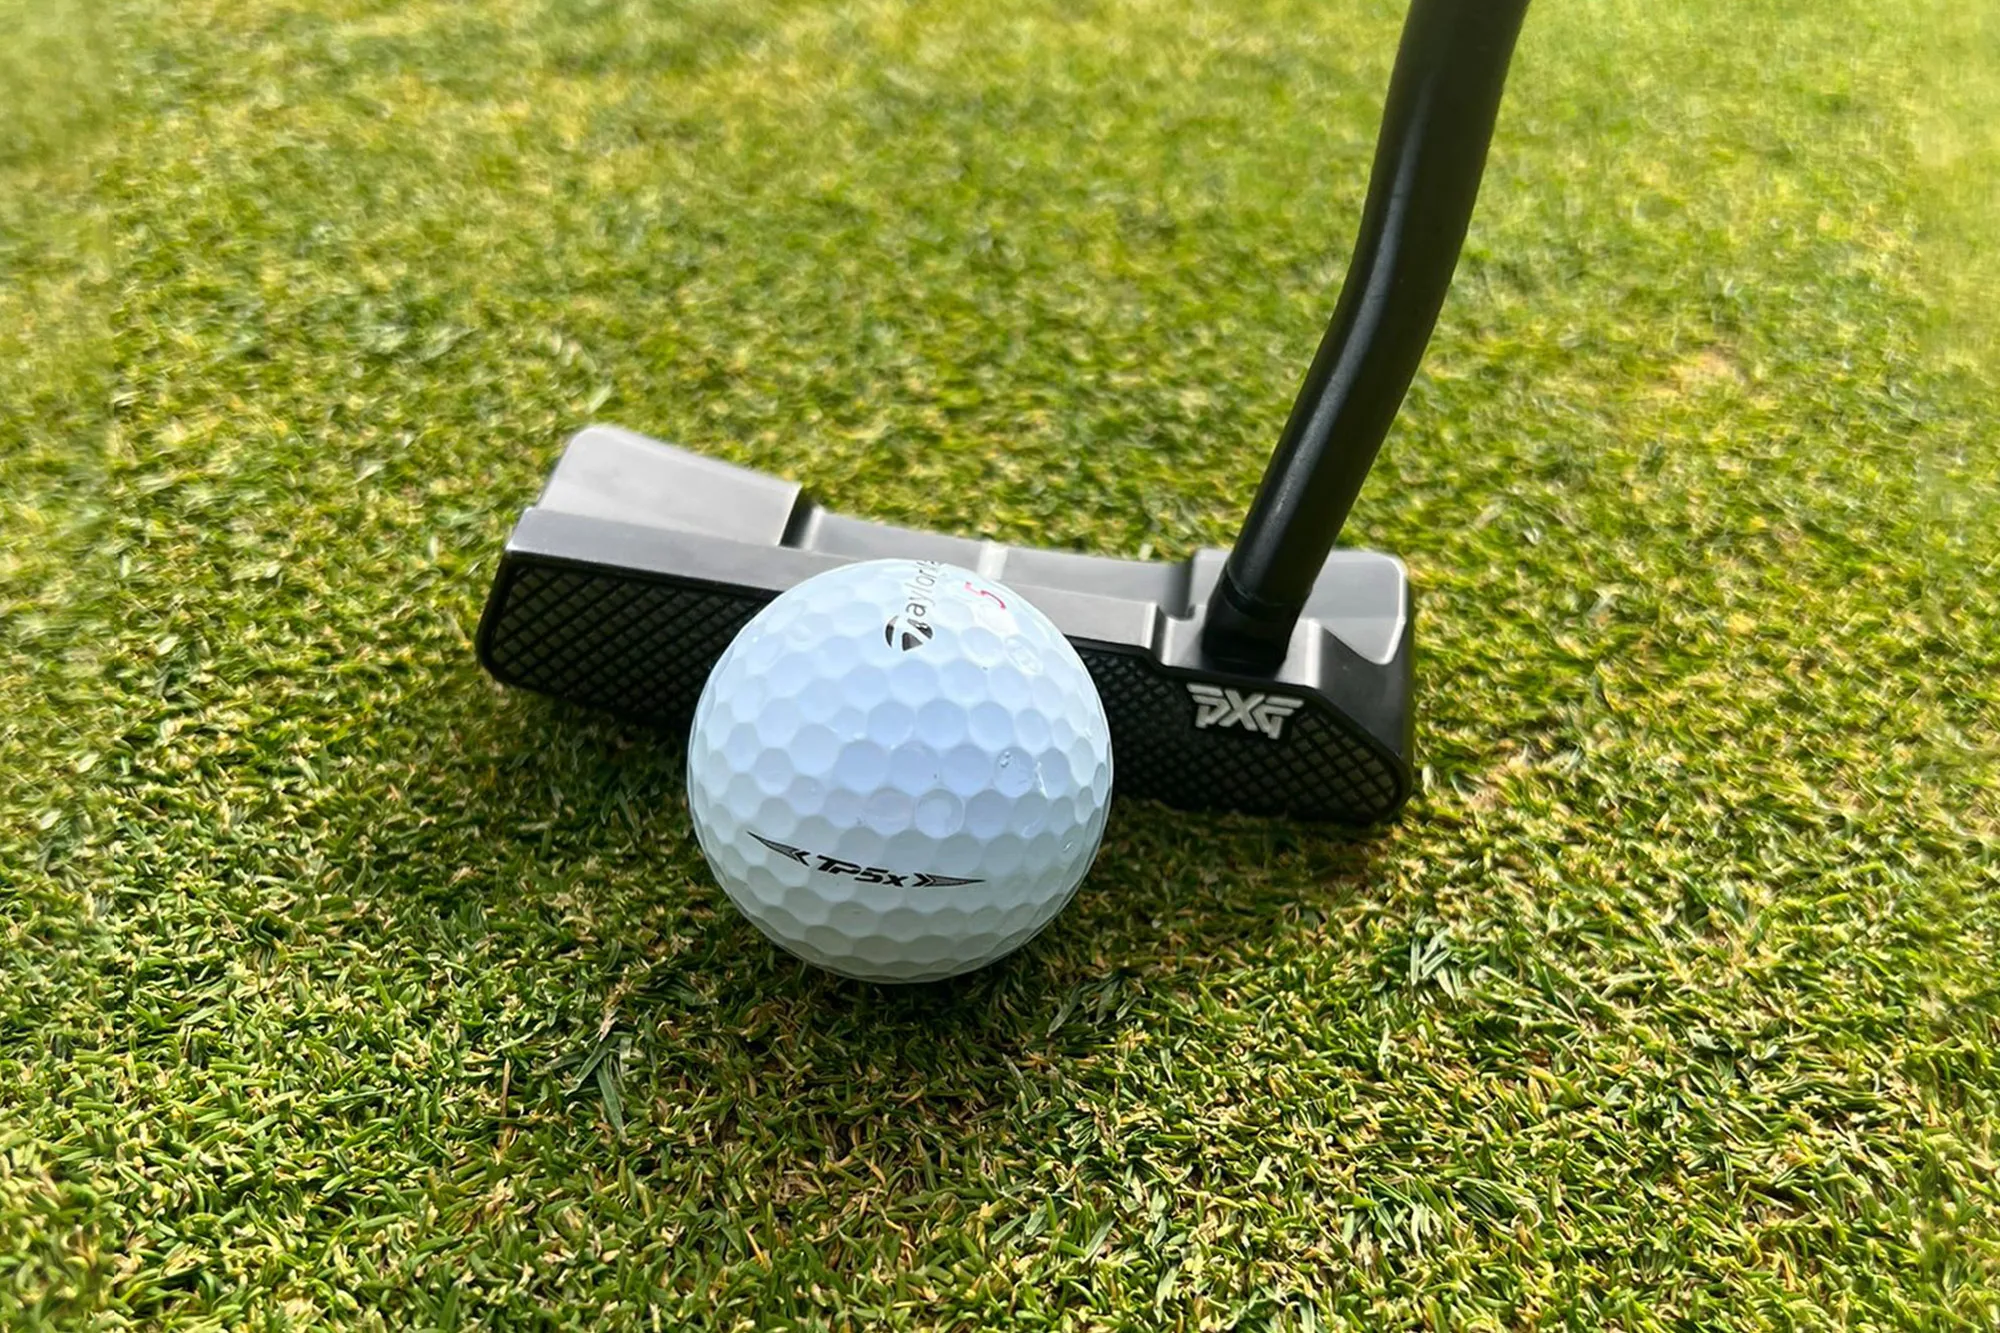 TaylorMade TPX5 golf ball